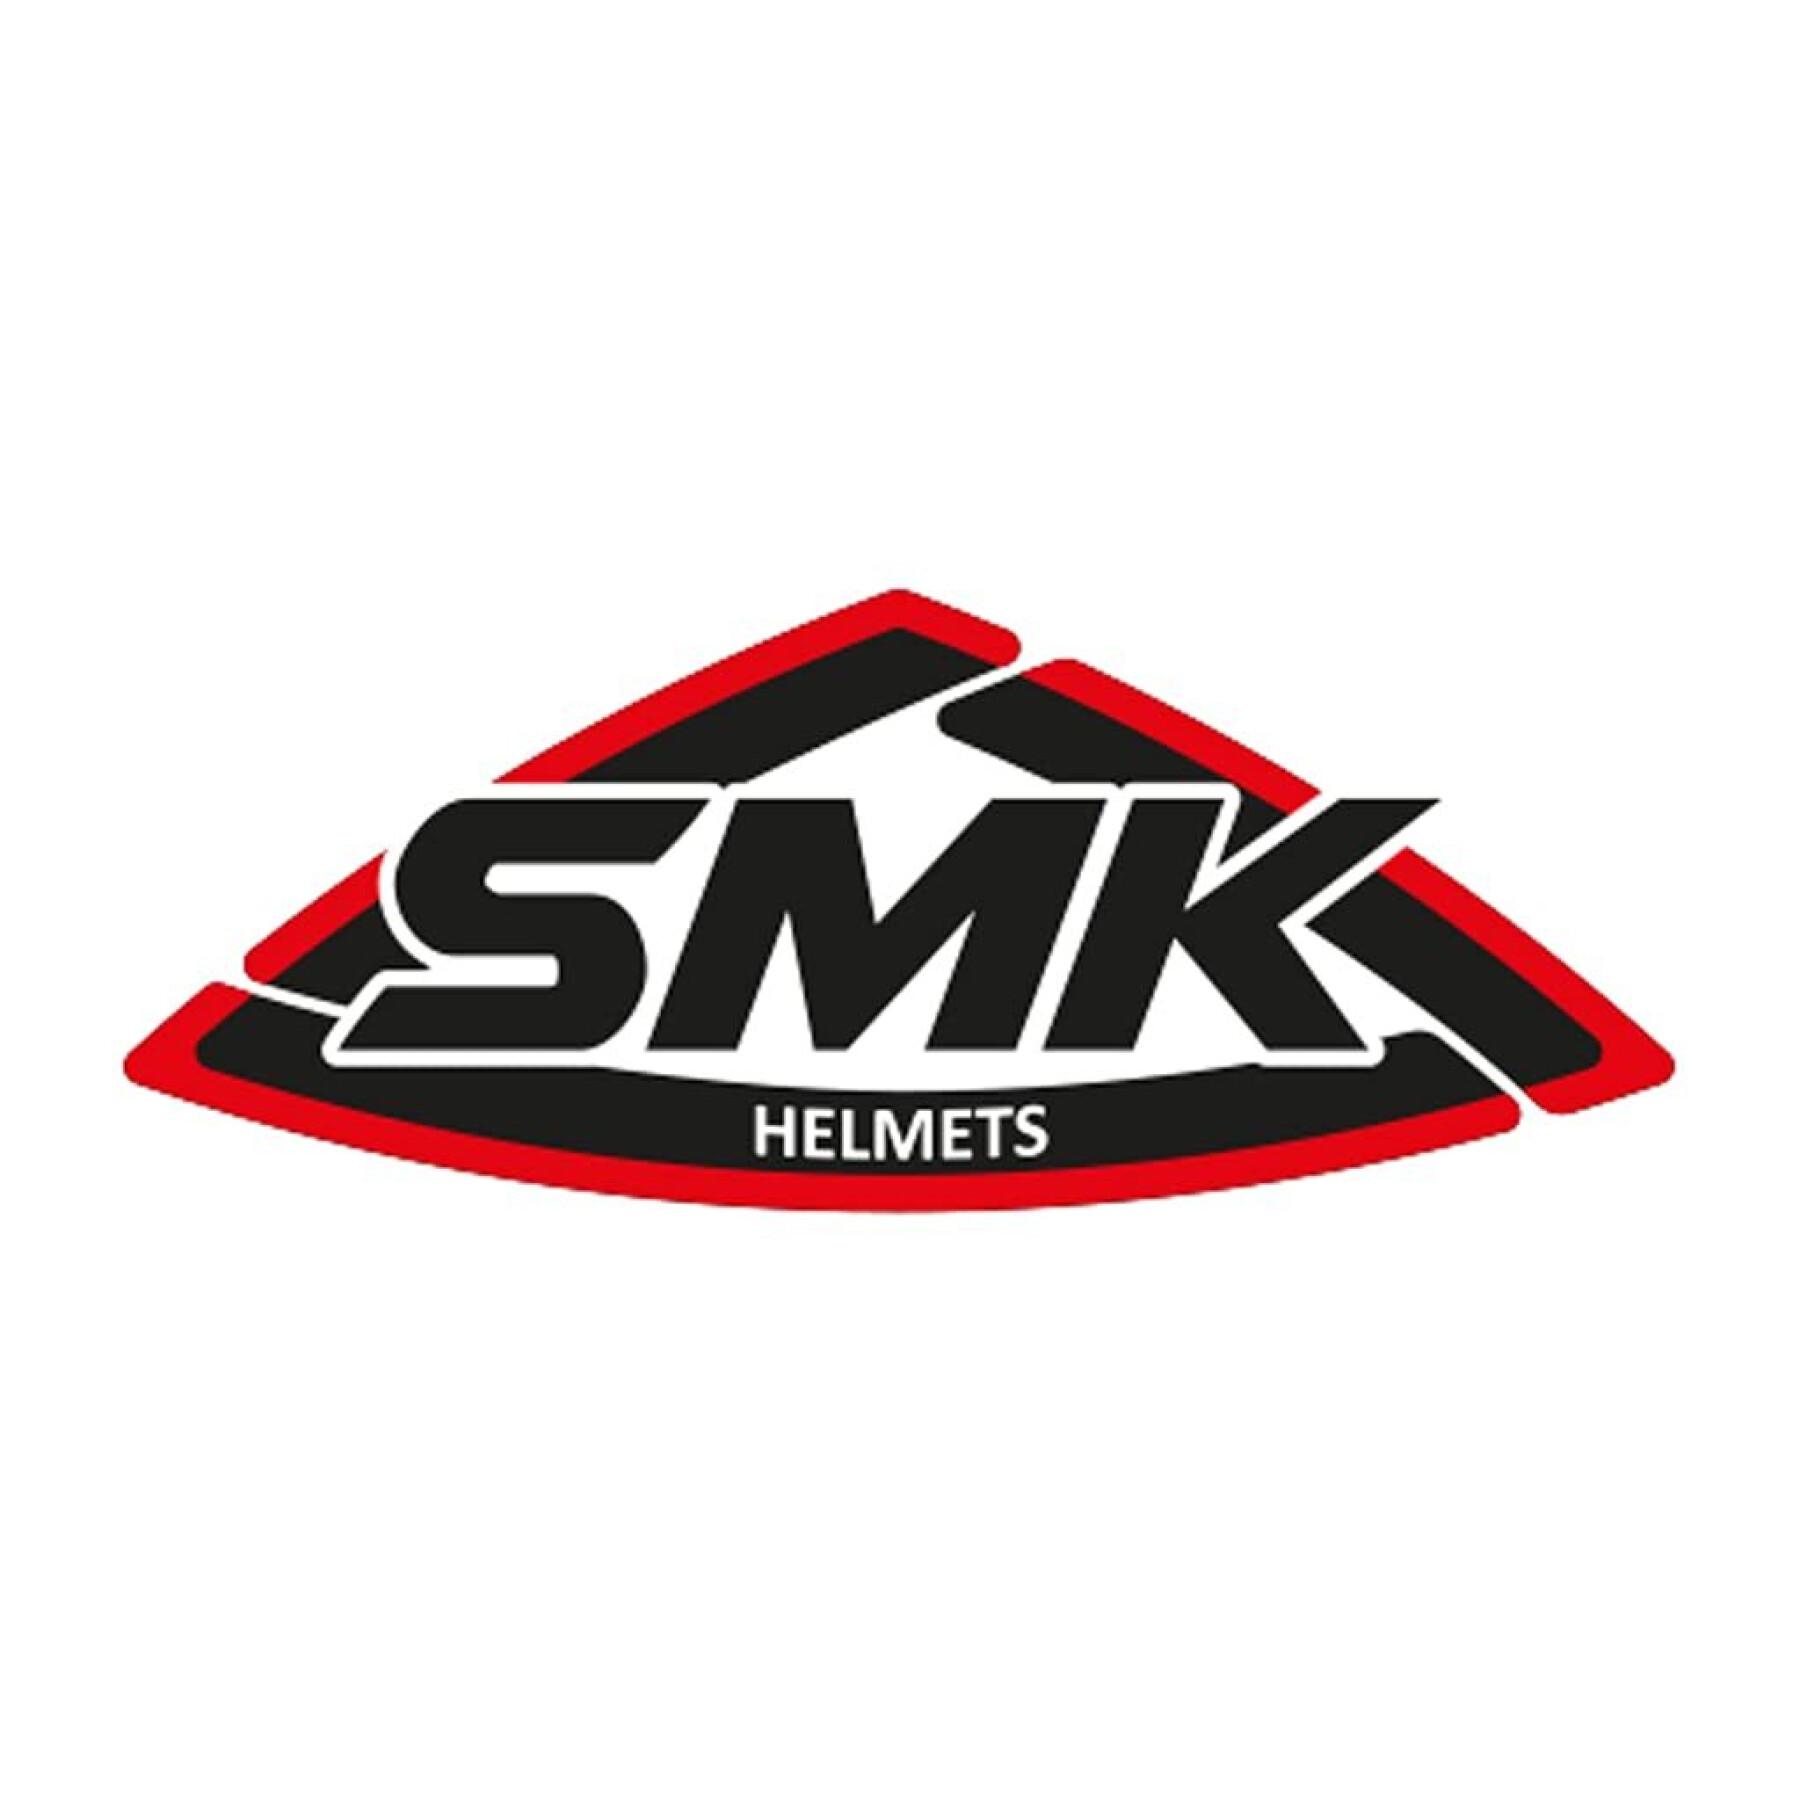 Plaque de base SMK retro / retro jet